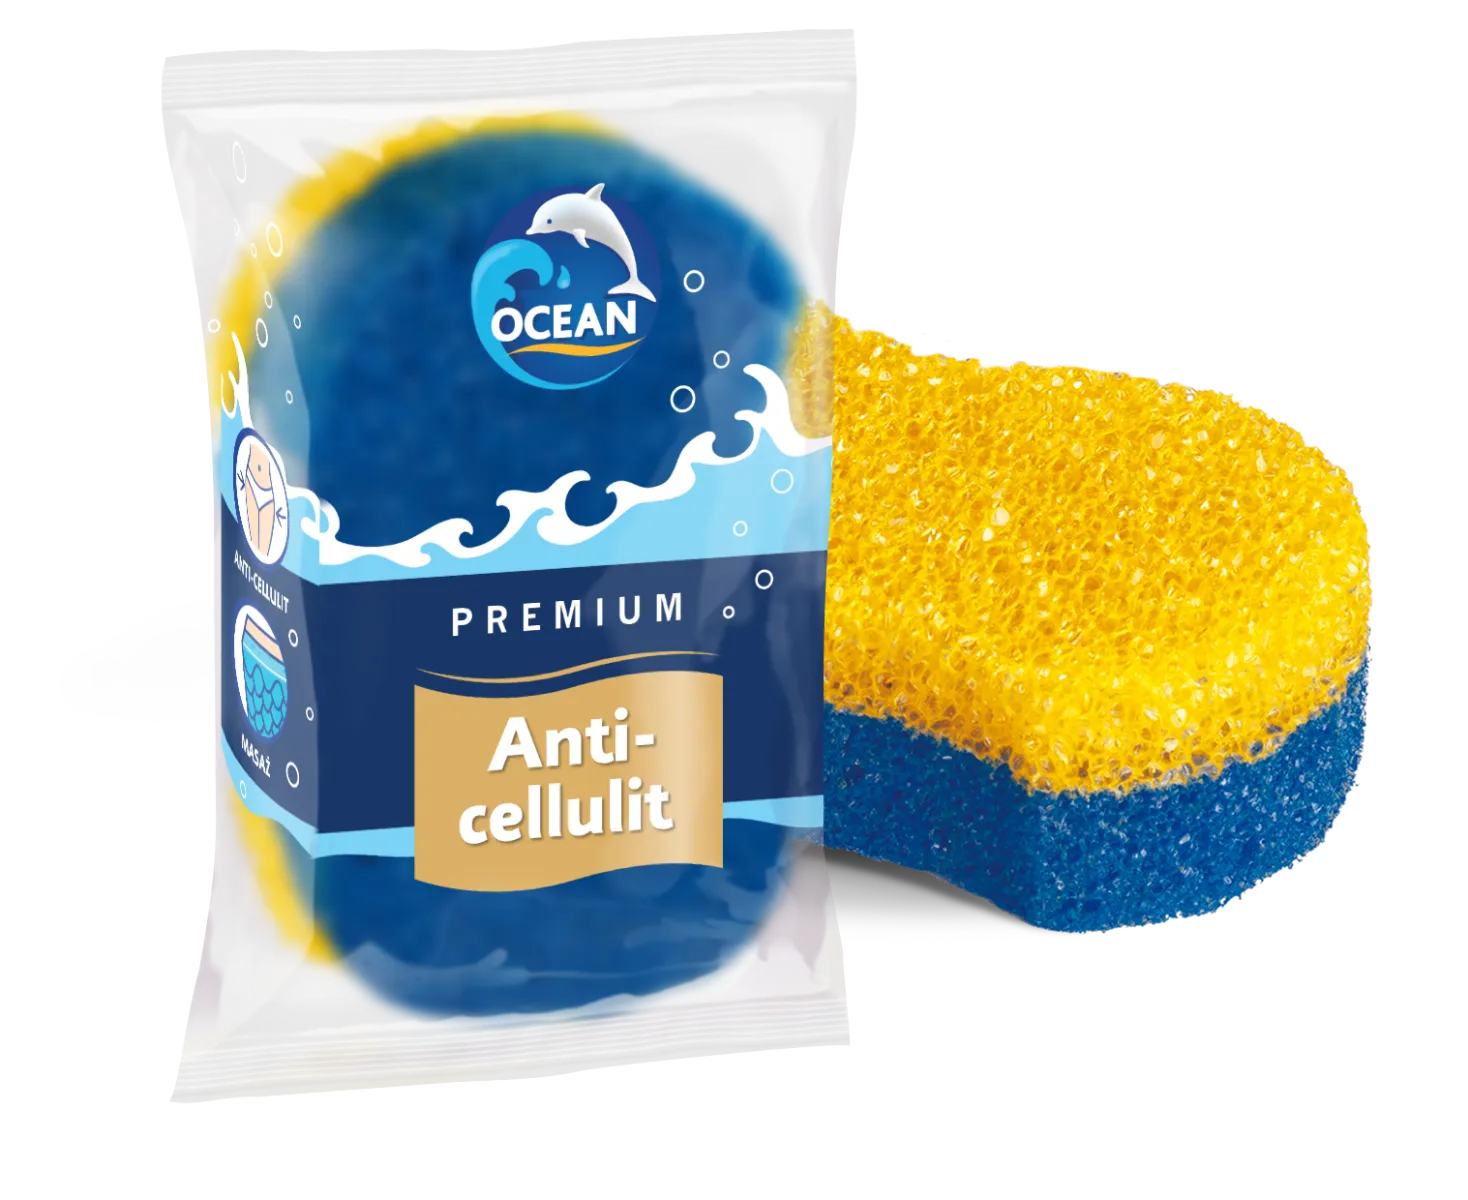 Ocean Anti-Cellulit gąbka do kąpieli i masażu, 1 szt.